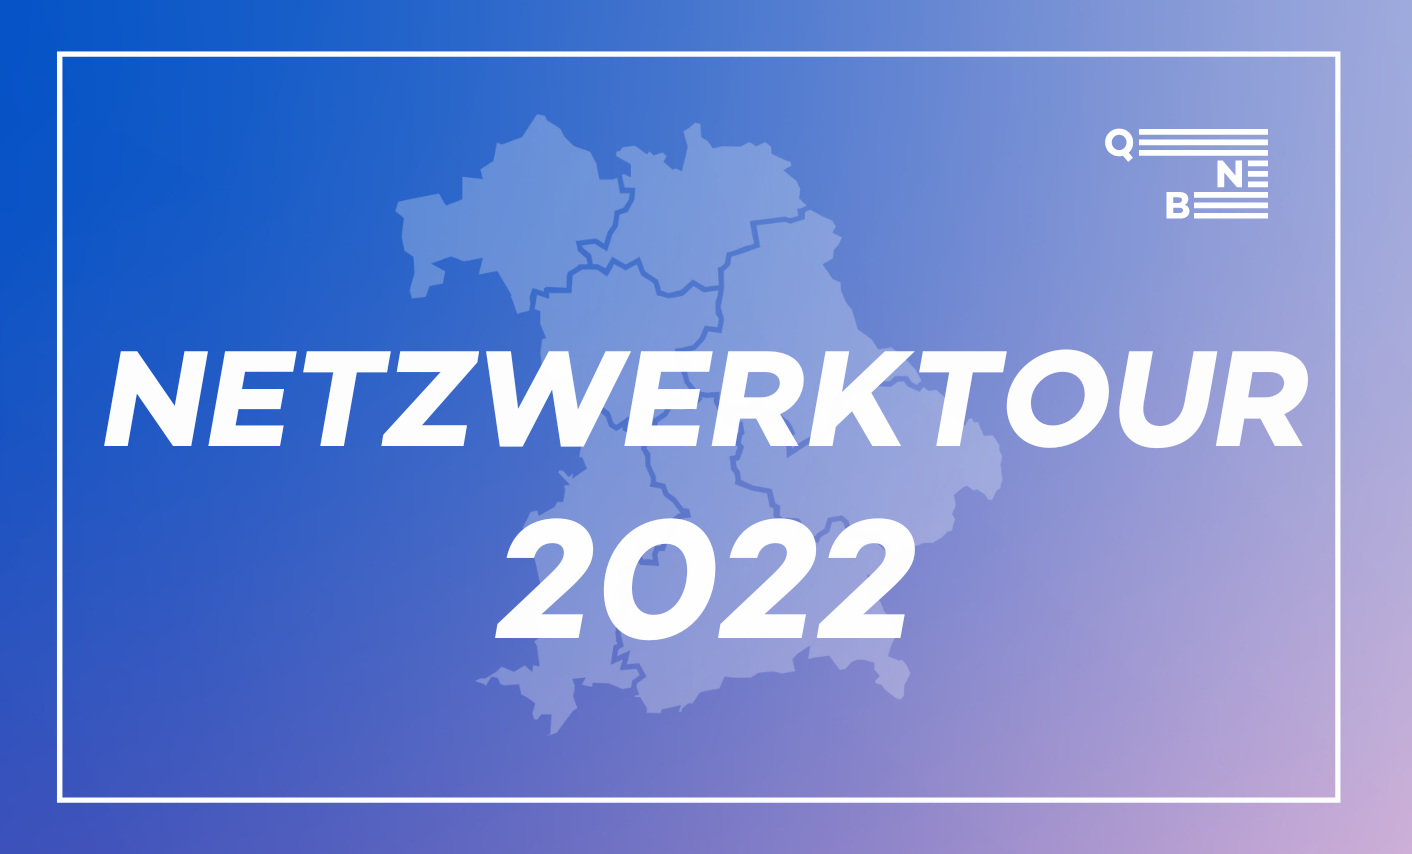 Bayernkarte mit Schriftzug Netzwerktour 2022